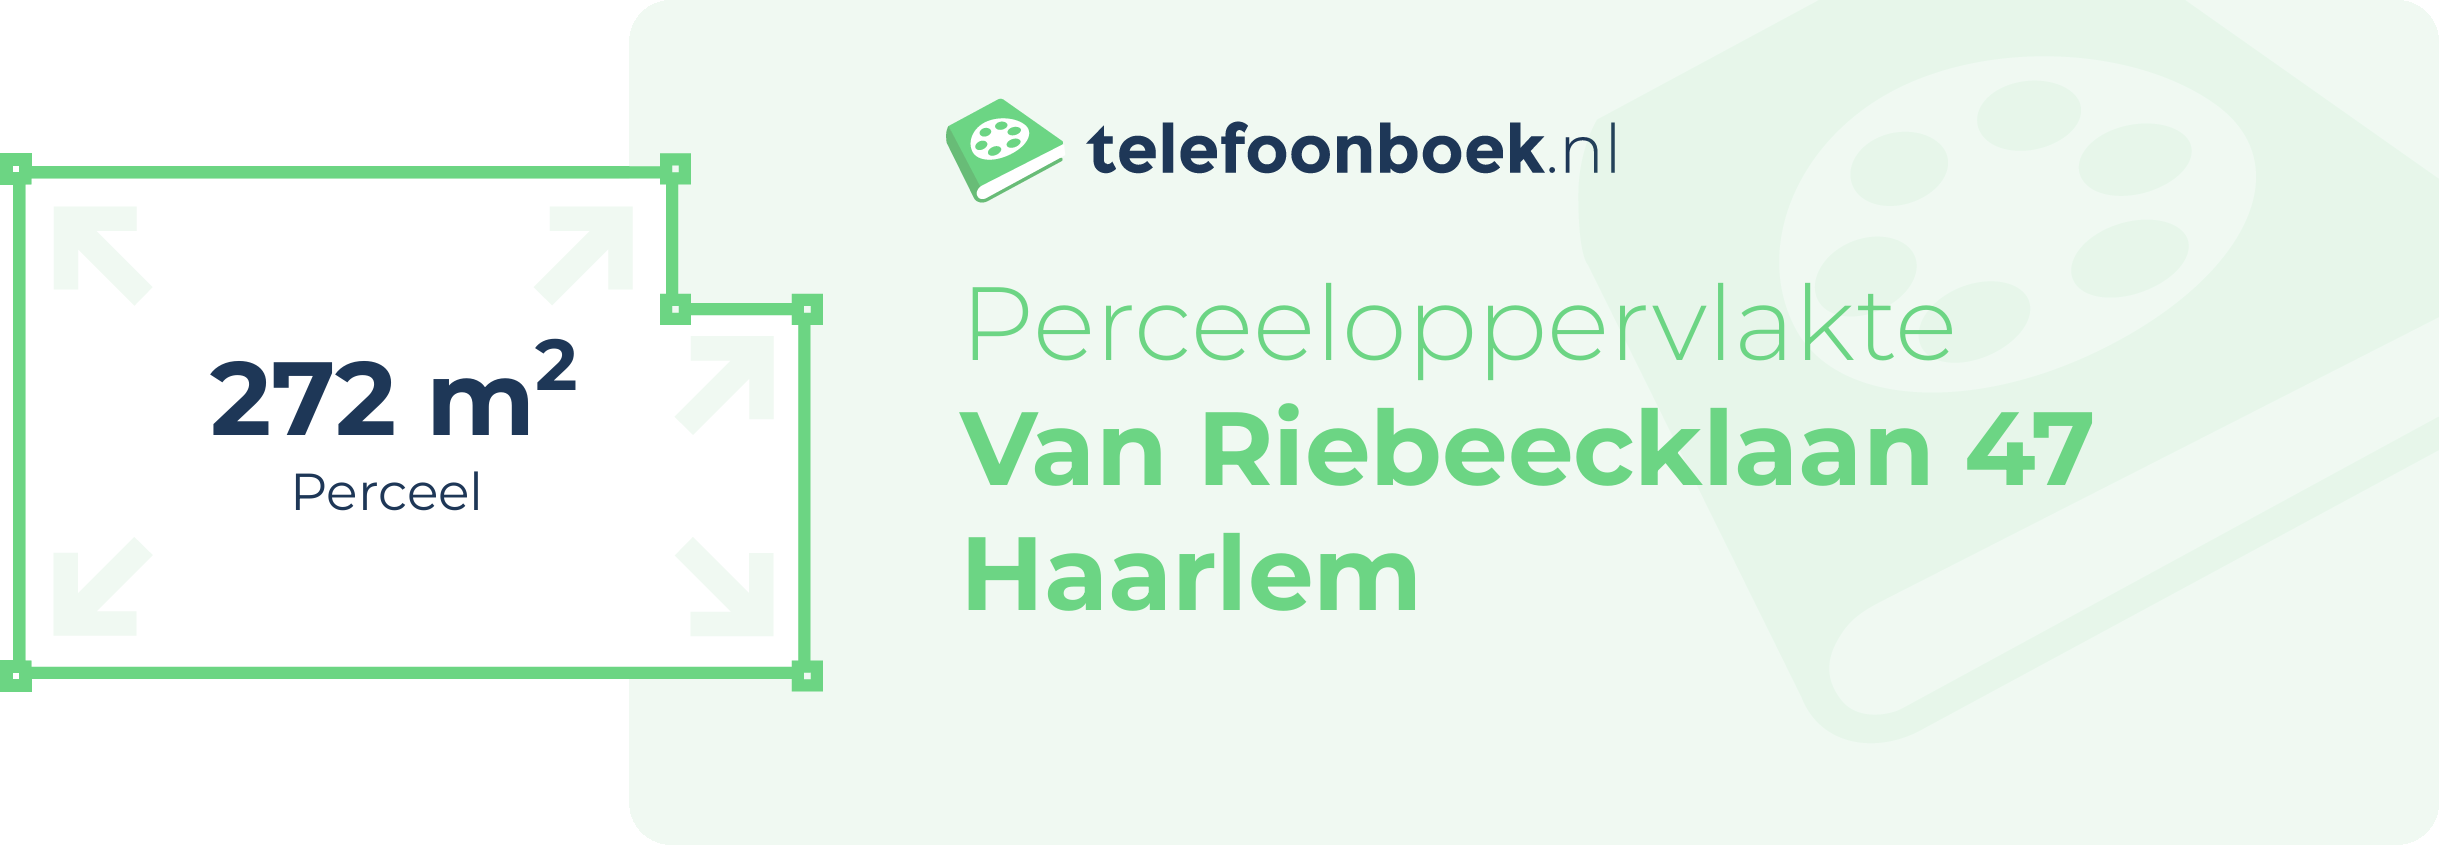 Perceeloppervlakte Van Riebeecklaan 47 Haarlem